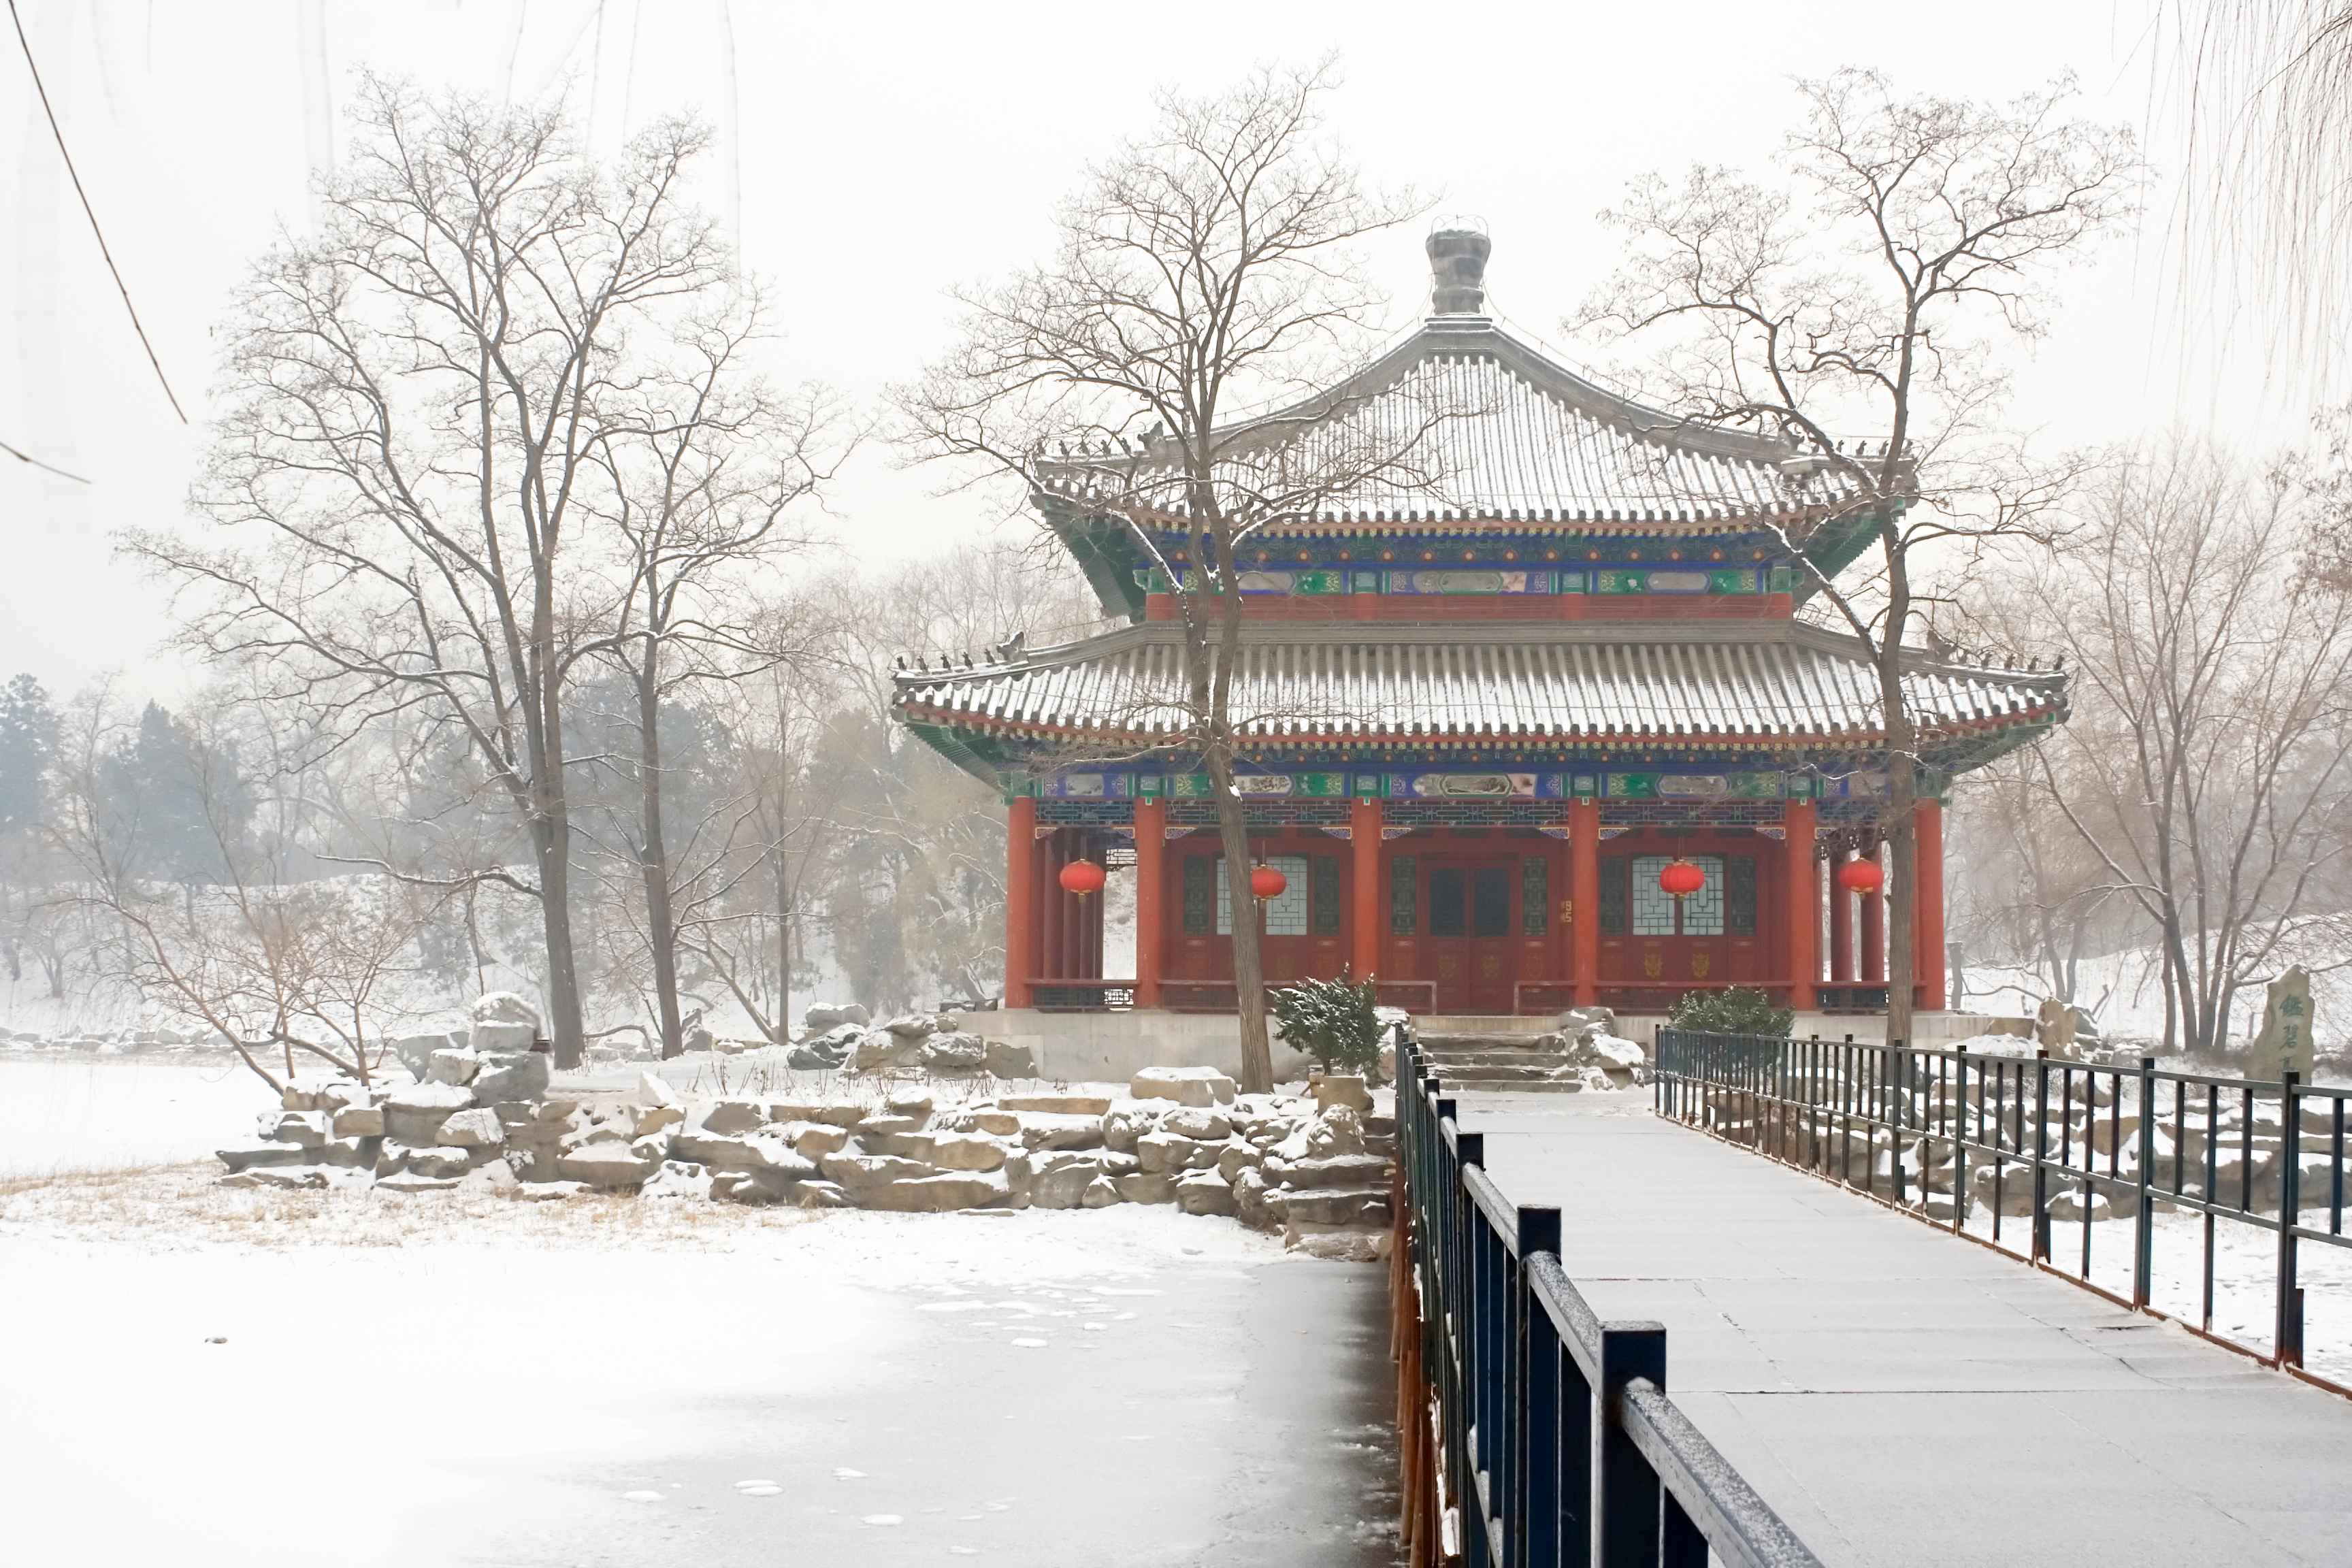 La Chine est confrontée à des conditions hivernales extrêmes depuis une semaine : des records de froid et un violent blizzard au cours du week-end dernier. © Yong Hian Lim, Adobe Stock